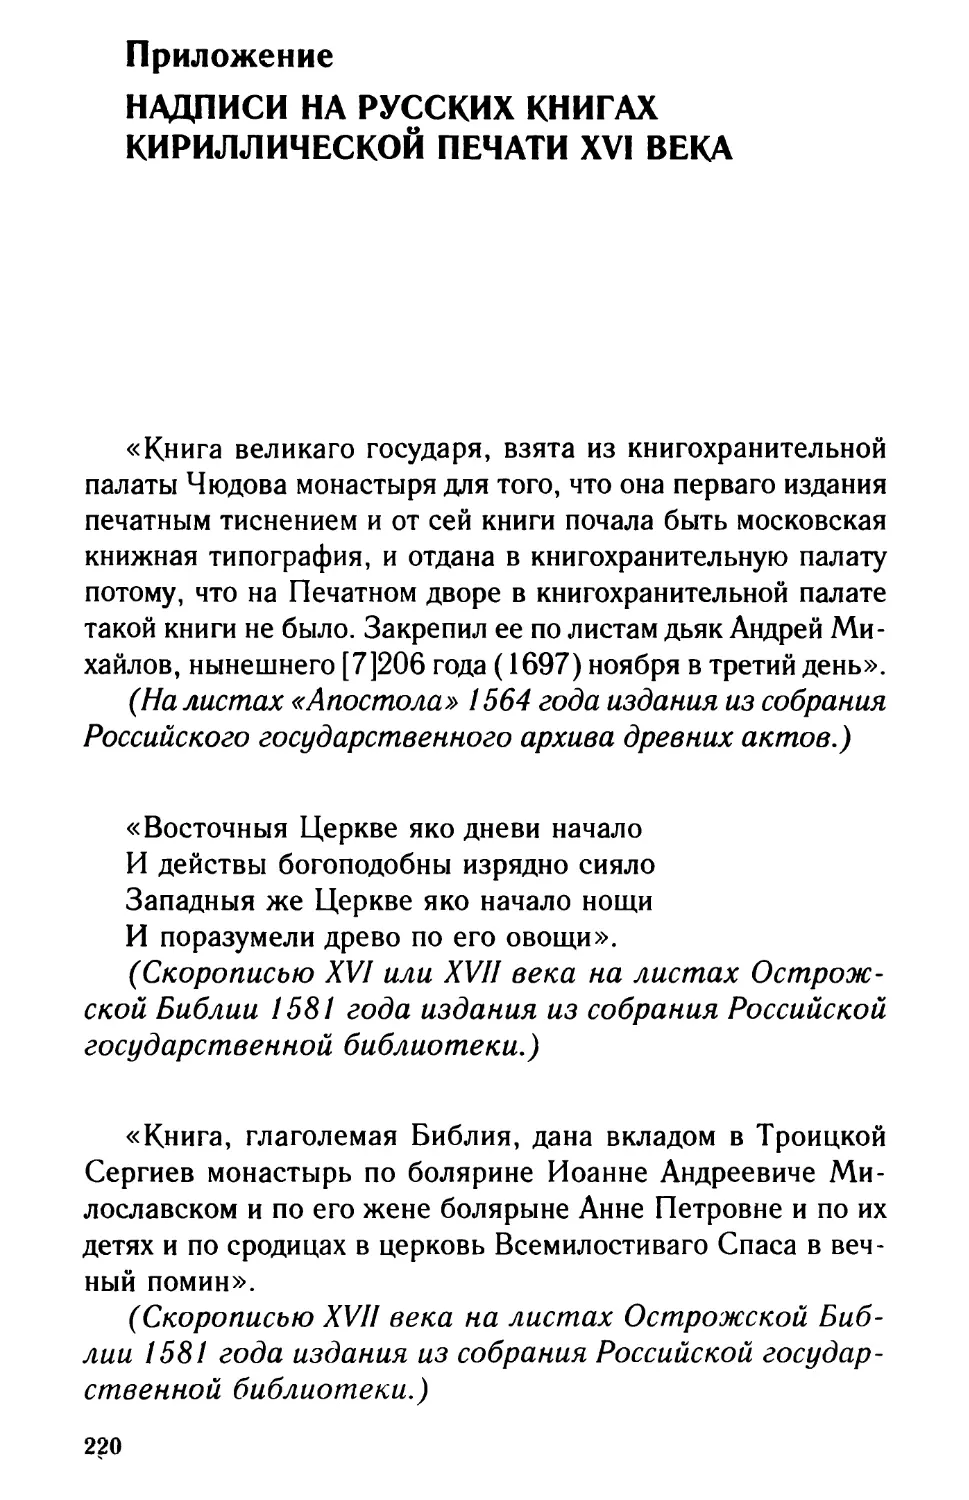 Приложение. Надписи на русских книгах кириллической печати XVI века